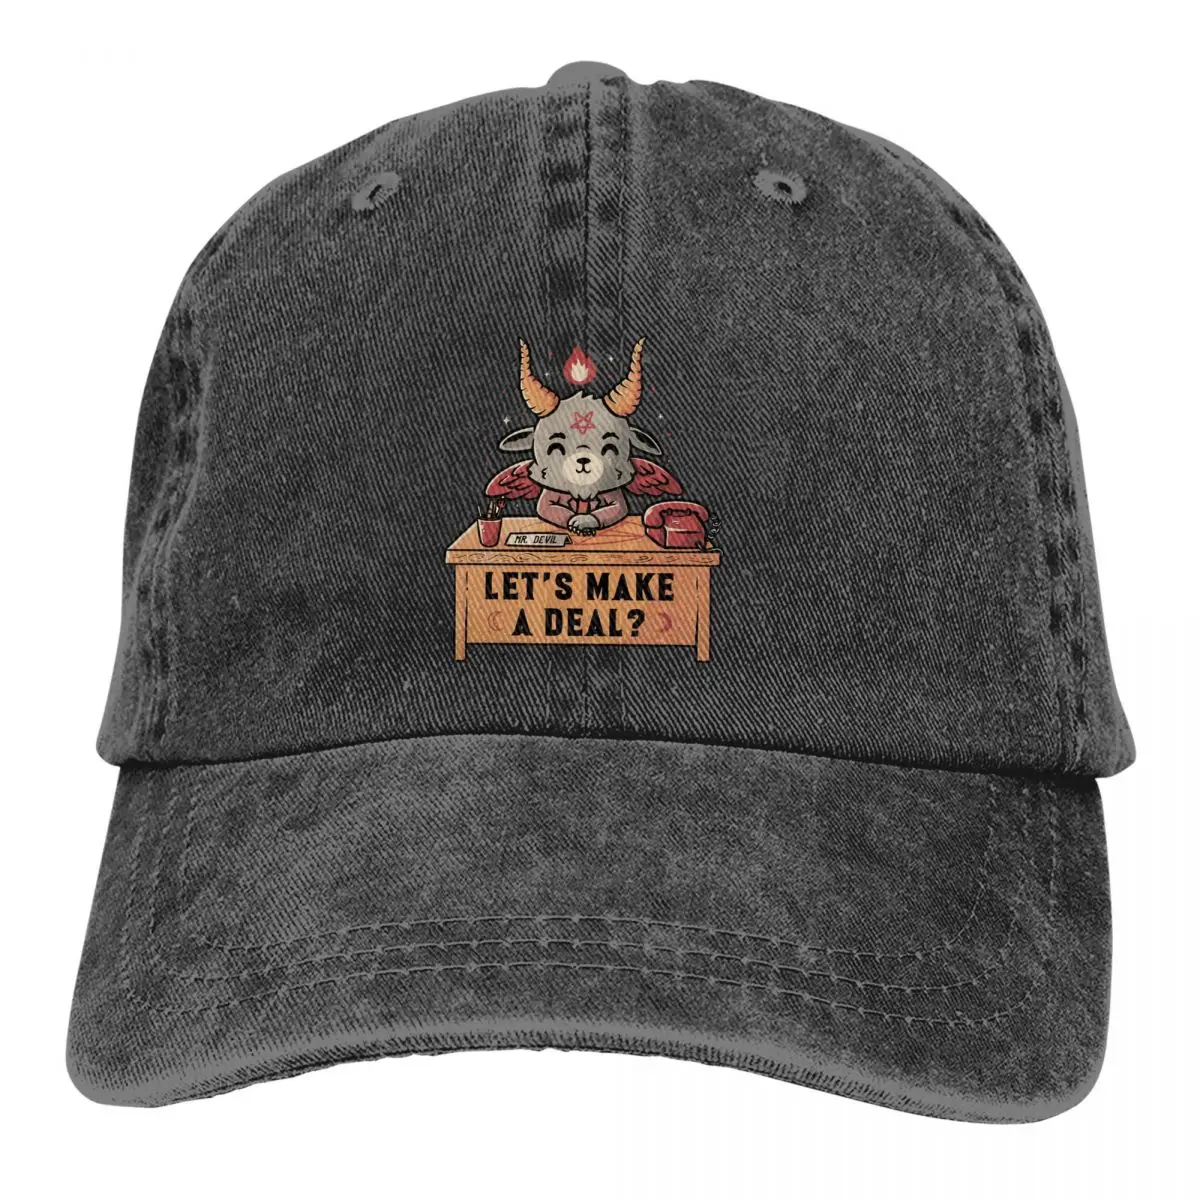 

Washed Men's Baseball Cap Let's Make A Deal Funny Cute Evil Trucker Snapback Caps Dad Hat Baphomet Satan Lucifer Golf Hats